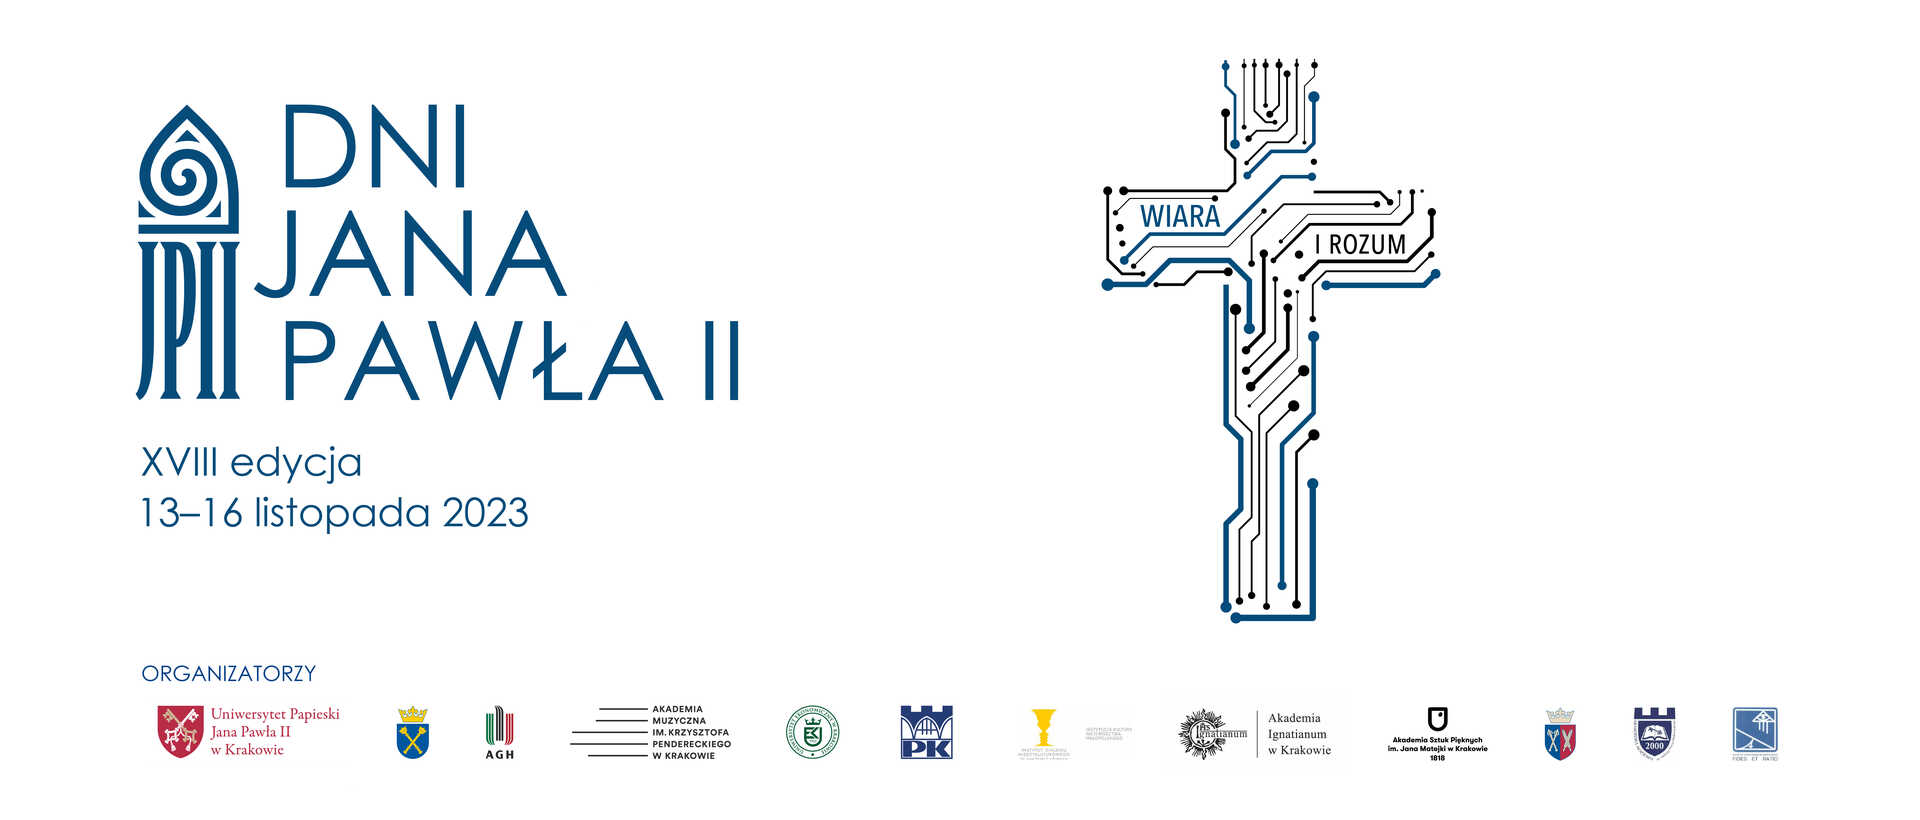 Grafika Dni Jana Pawła II. Po lewej logo dni, po prawej krzyż - symbol bieżącej edycji - złożony z układów scalonych z wpisanym weń hasłem "wiara i rozum". U dołu logotypy organizatorów wydarzenia